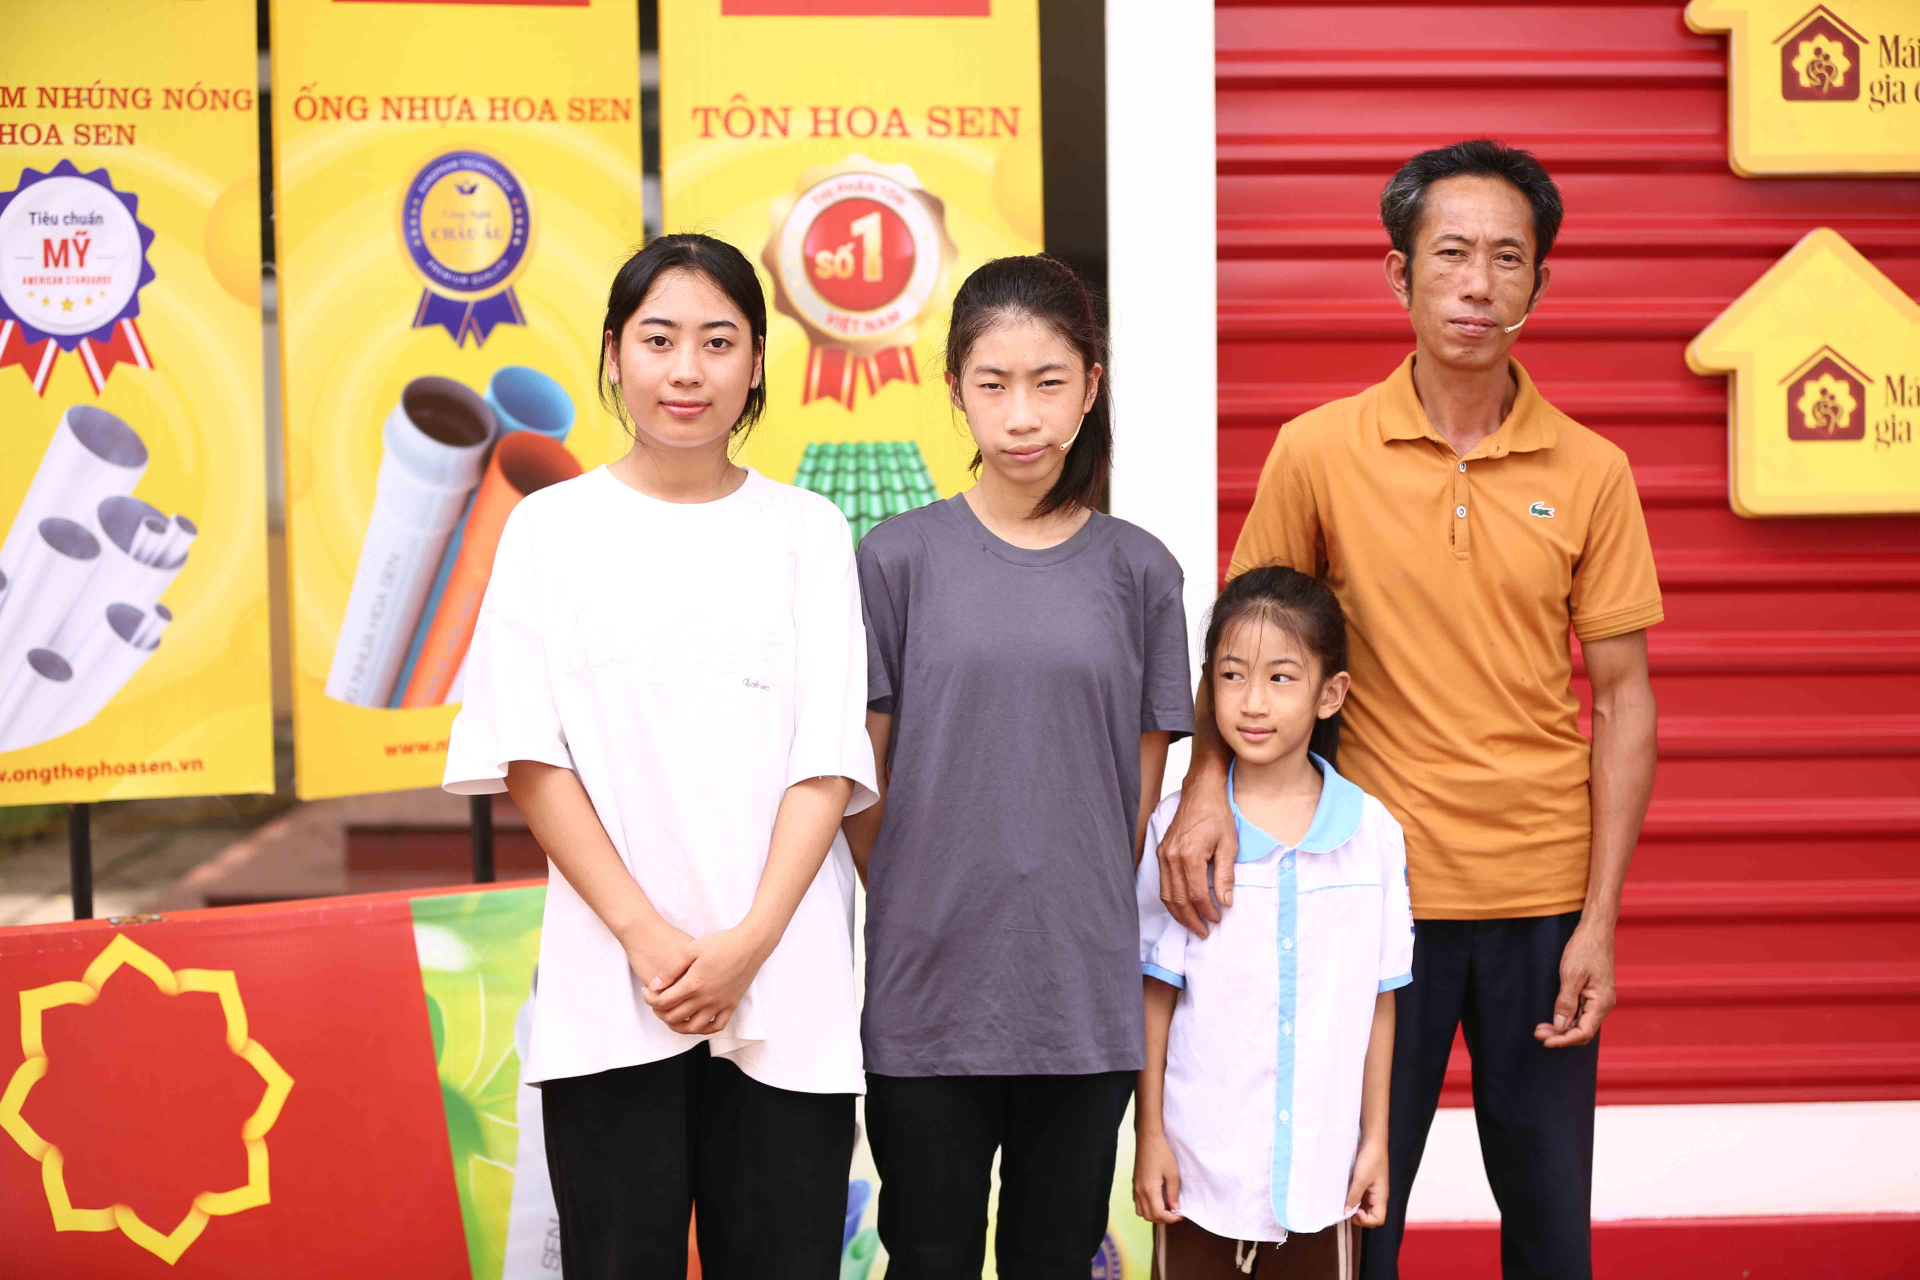 MC Quyền Linh, ca sĩ Kay Trần và ca sĩ LyLy xúc động khi chứng kiến hoàn cảnh của các em nhỏ mồ côi - ảnh 7